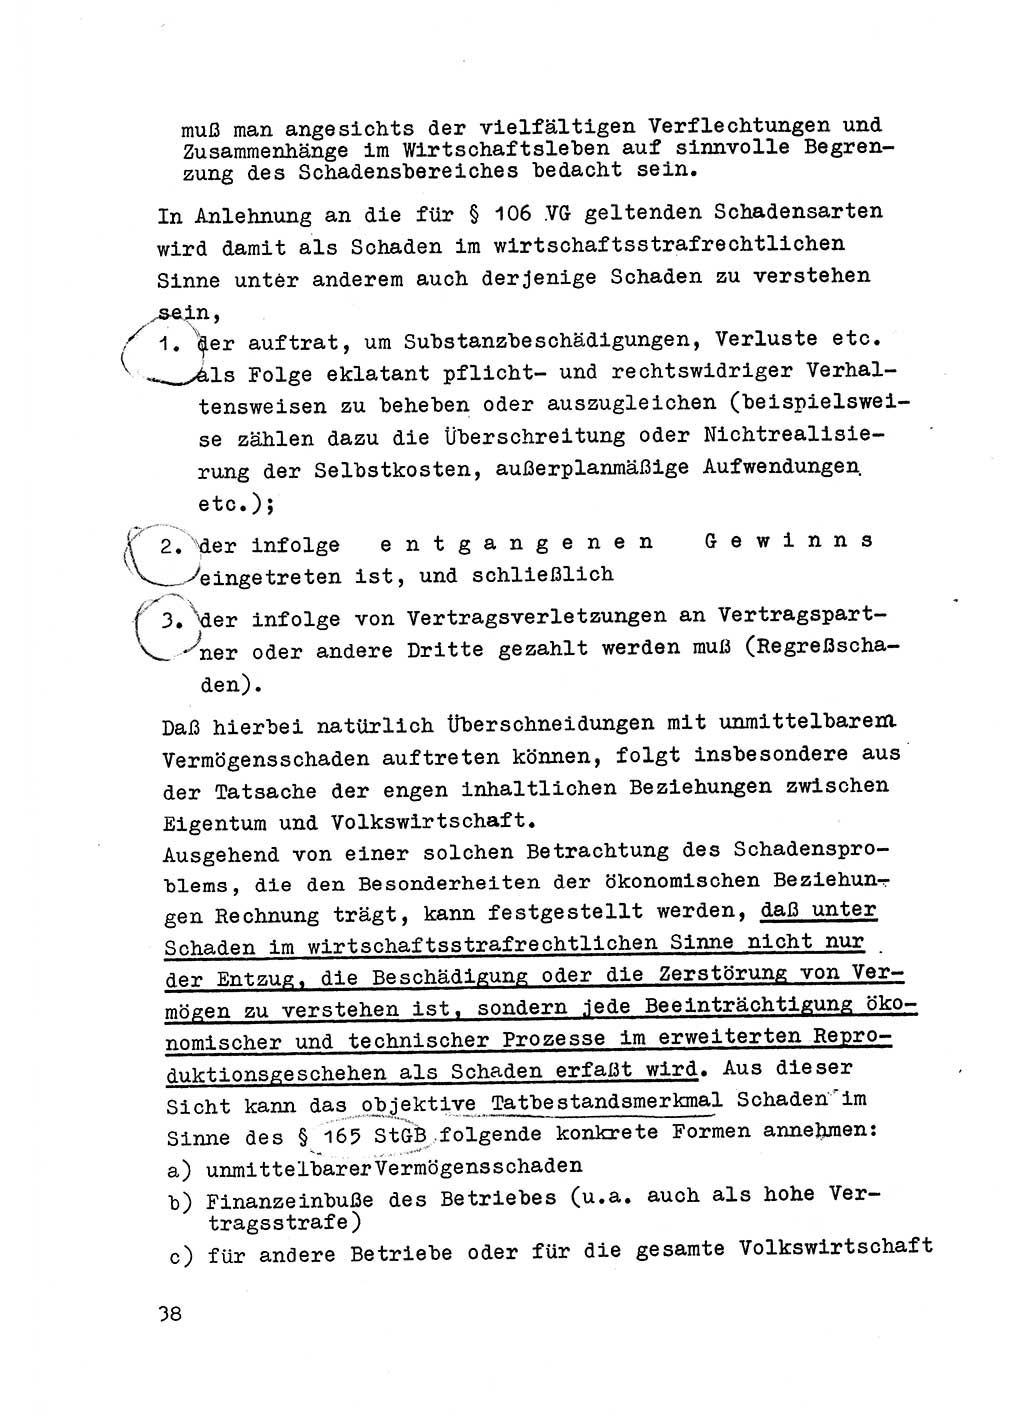 Strafrecht der DDR (Deutsche Demokratische Republik), Besonderer Teil, Lehrmaterial, Heft 6 1970, Seite 38 (Strafr. DDR BT Lehrmat. H. 6 1970, S. 38)